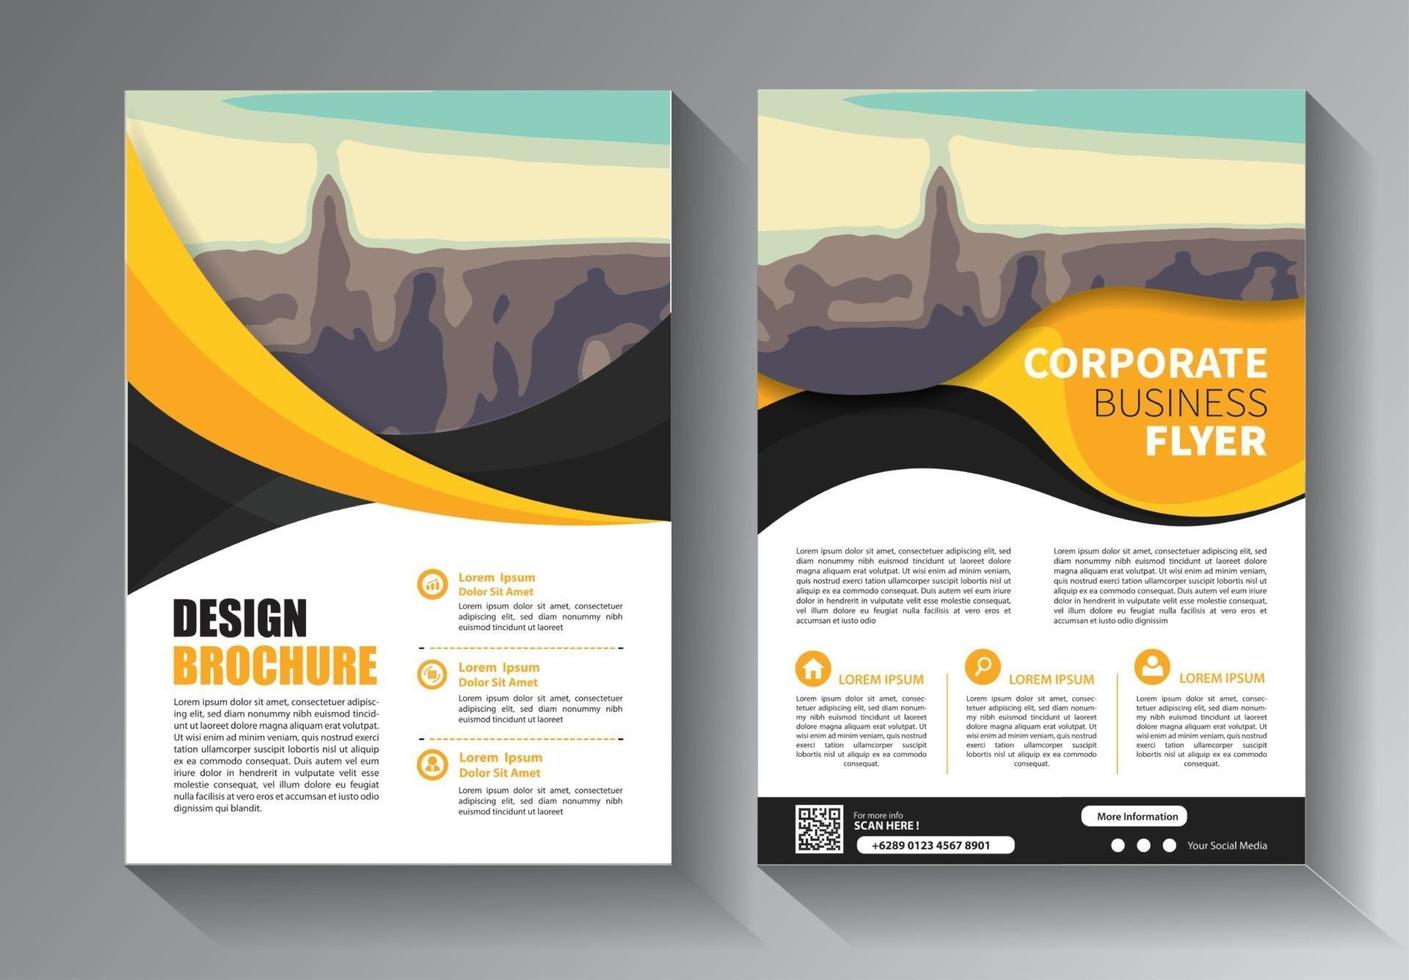 flyer modelo de negócios para promoção de layout de folheto ou empresa de relatório anual vetor